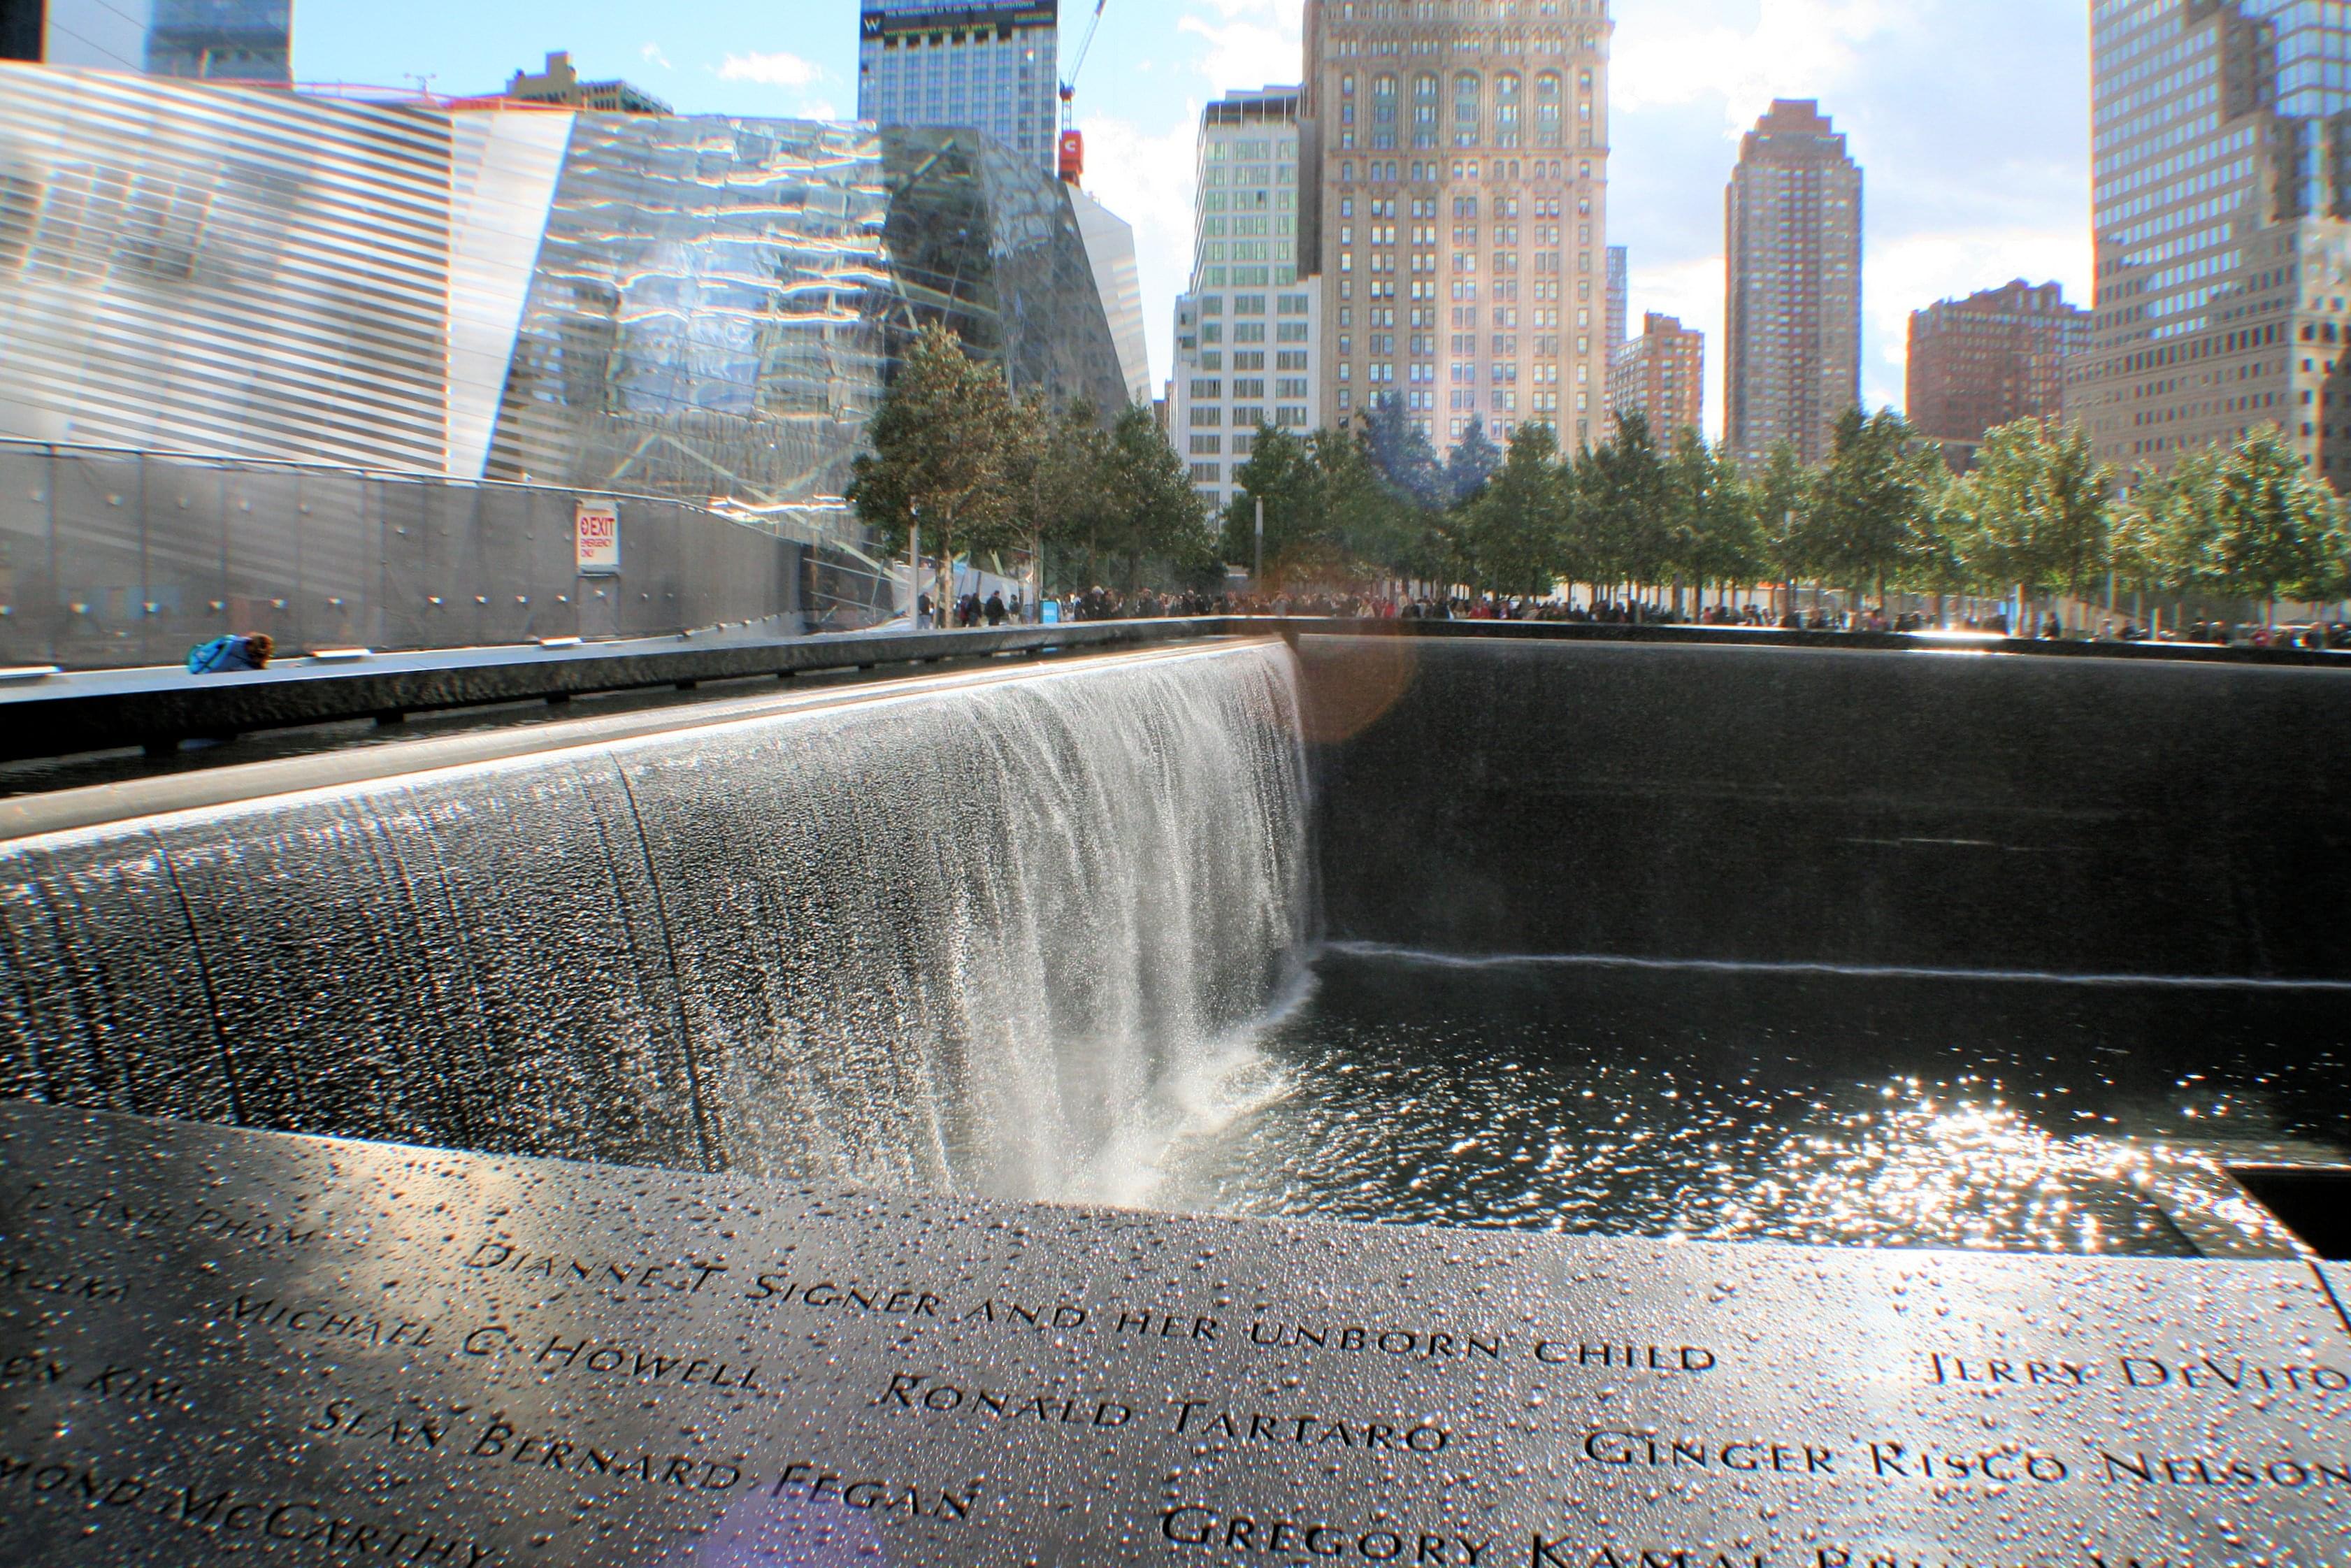 911 memorial waterfall pools